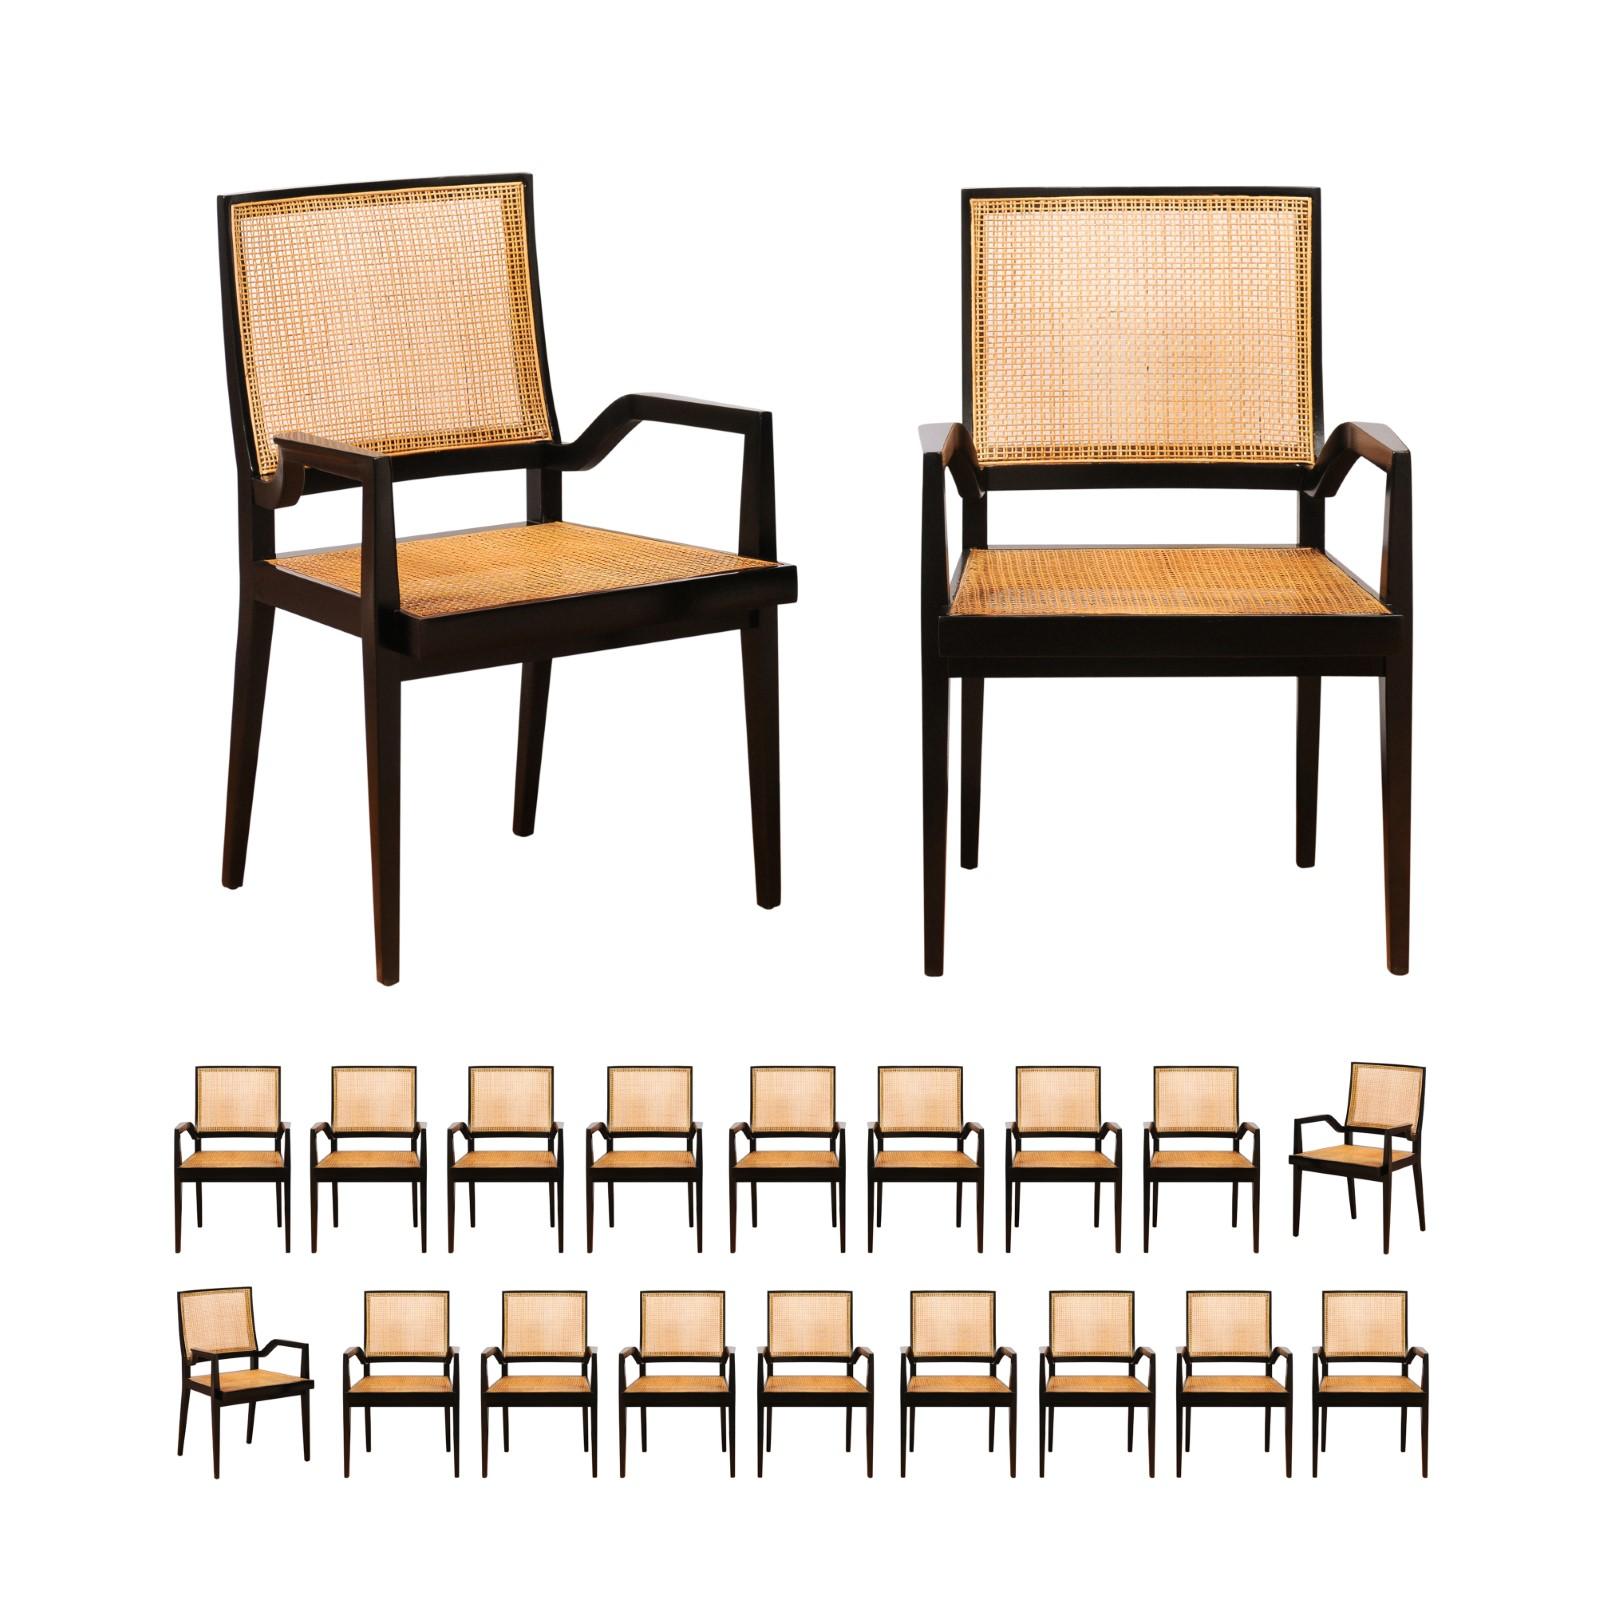 Ce grand ensemble de sièges ALL ARMS, impossible à trouver, est unique sur le marché mondial. Ces magnifiques chaises de salle à manger sont expédiées telles qu'elles ont été photographiées par des professionnels et décrites dans l'annonce :